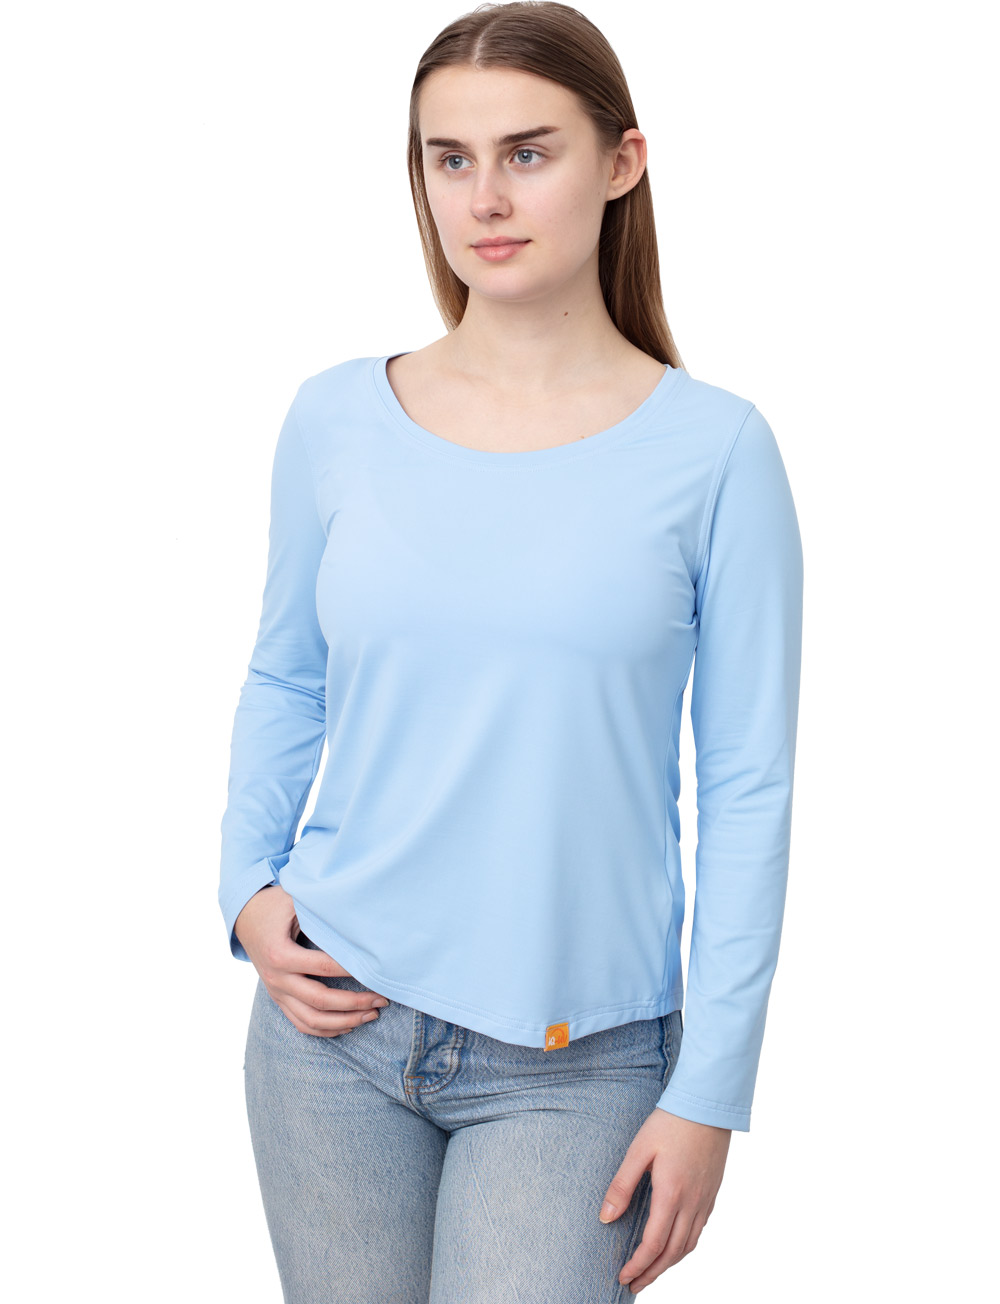 UV FREE Langarm Shirt blau angezogen